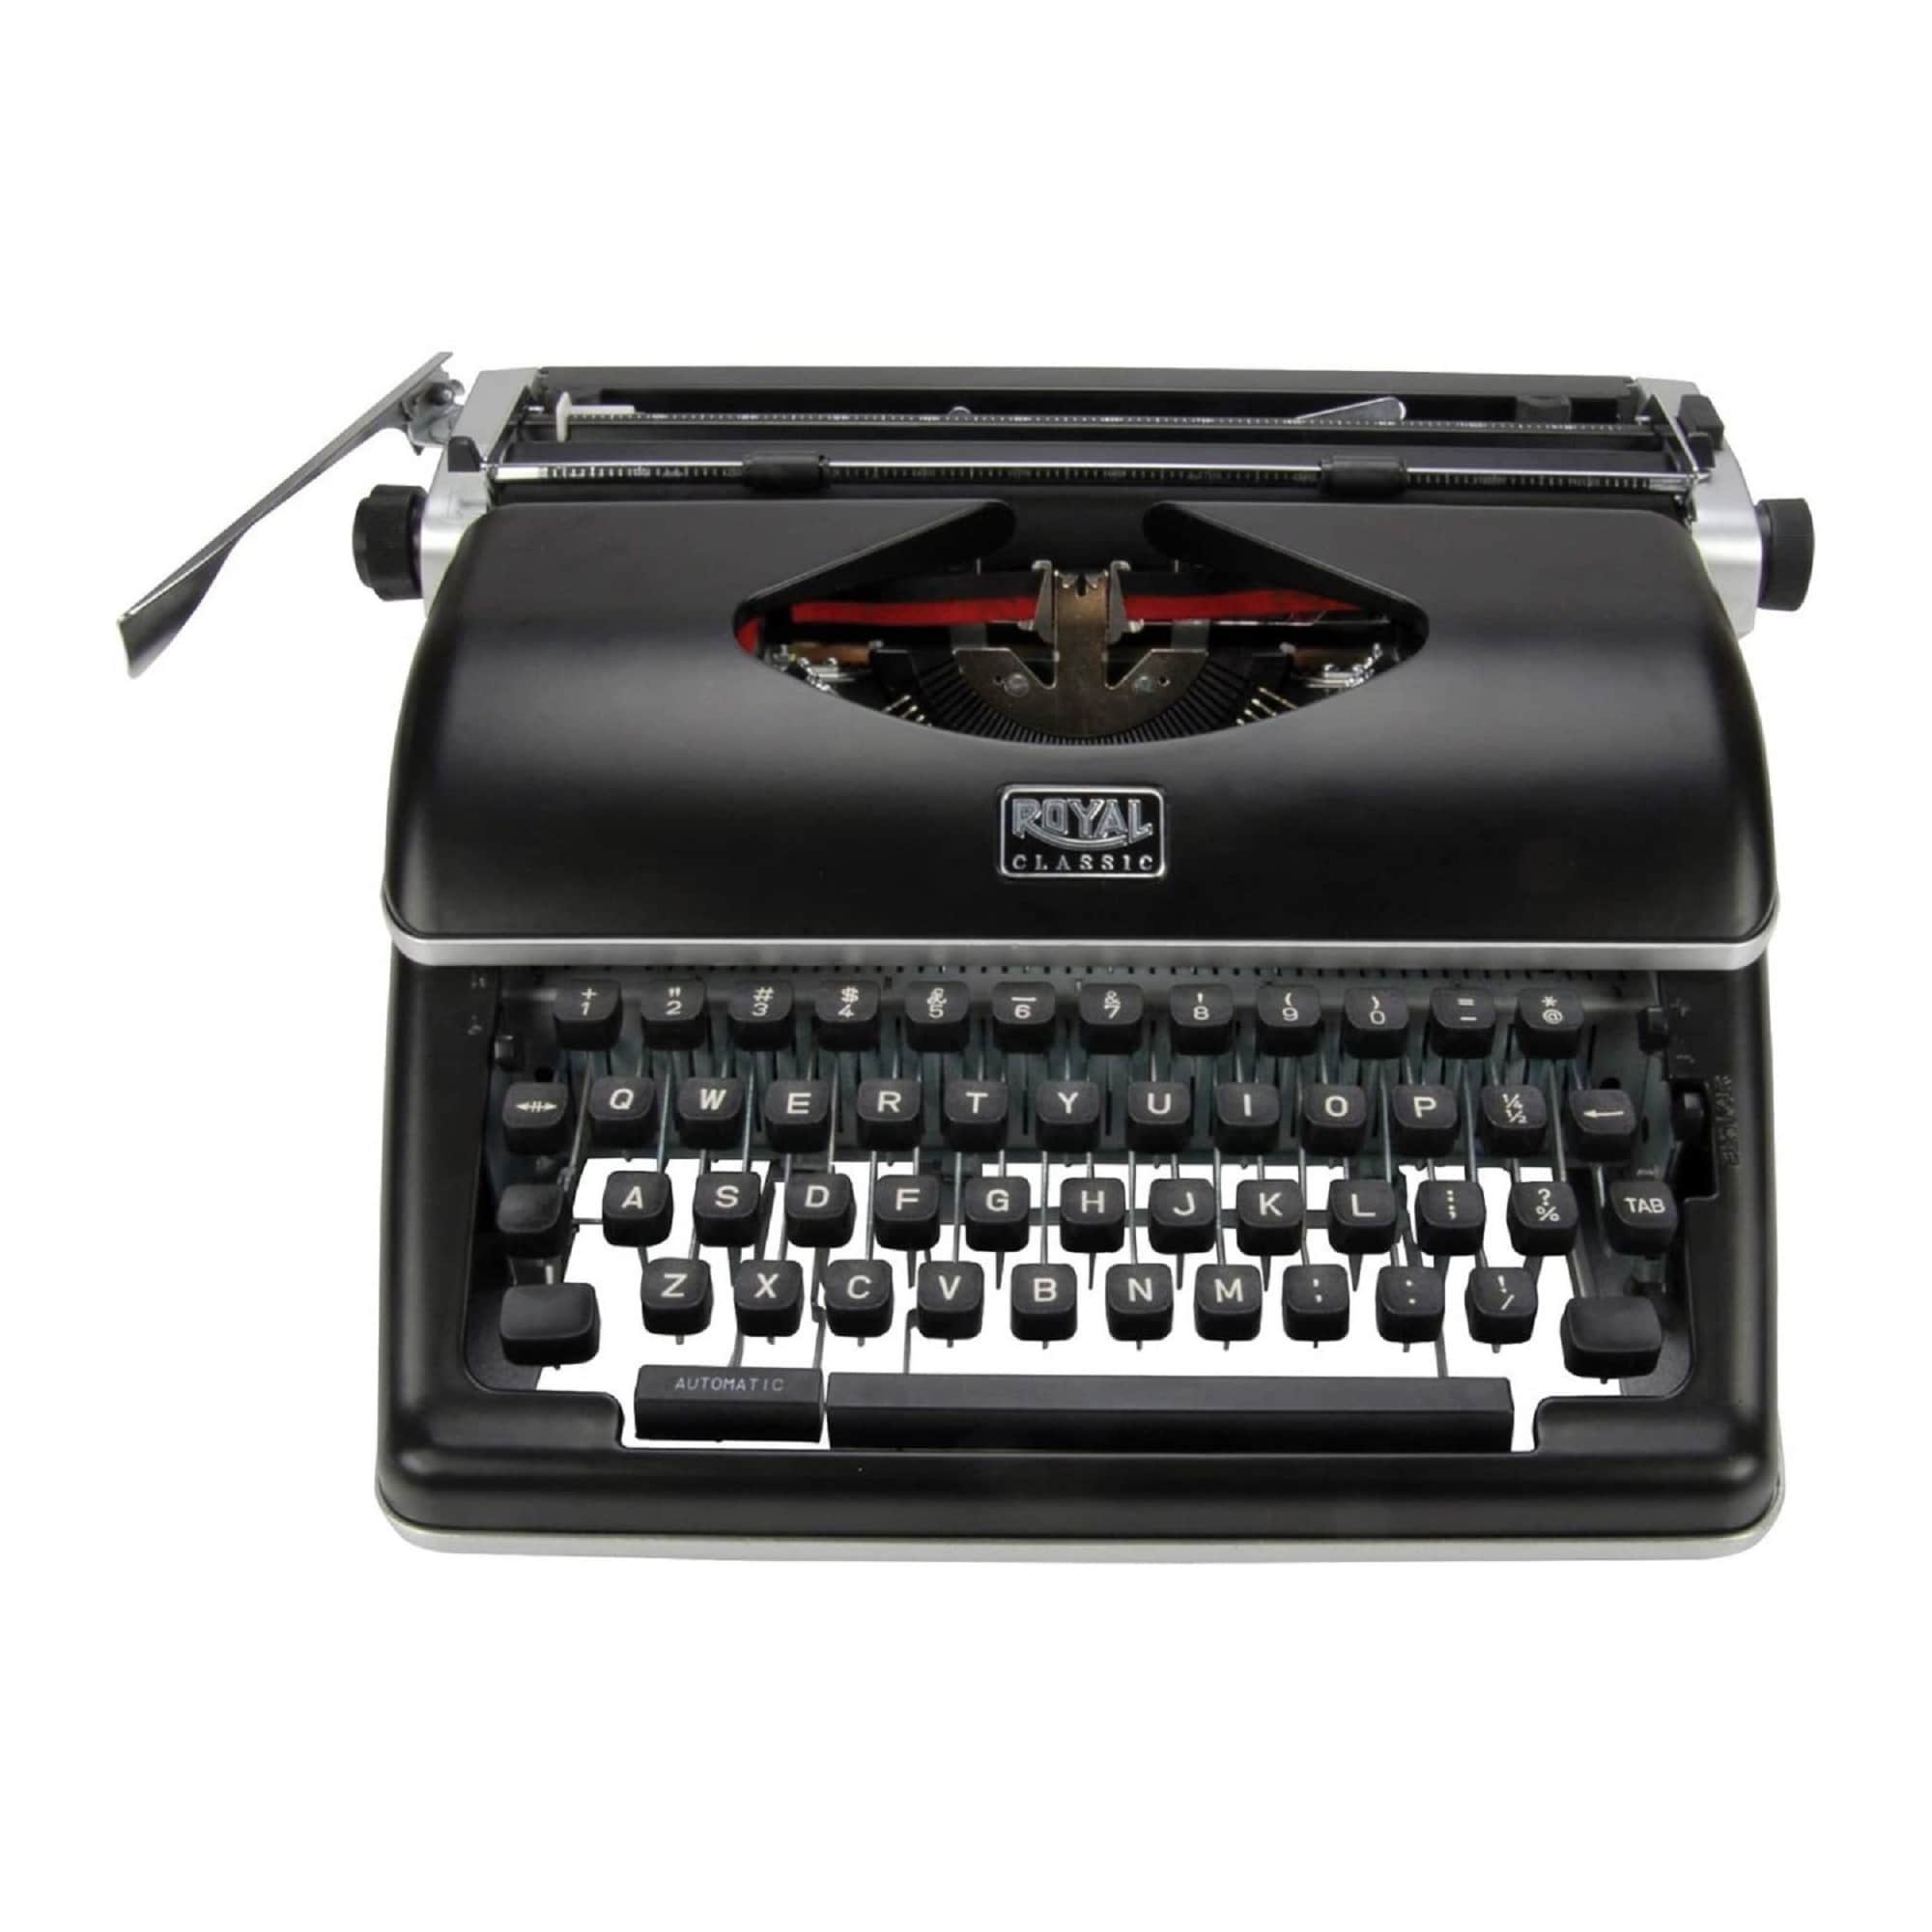 Royal Classic Manual Typewriter (Black) - Black